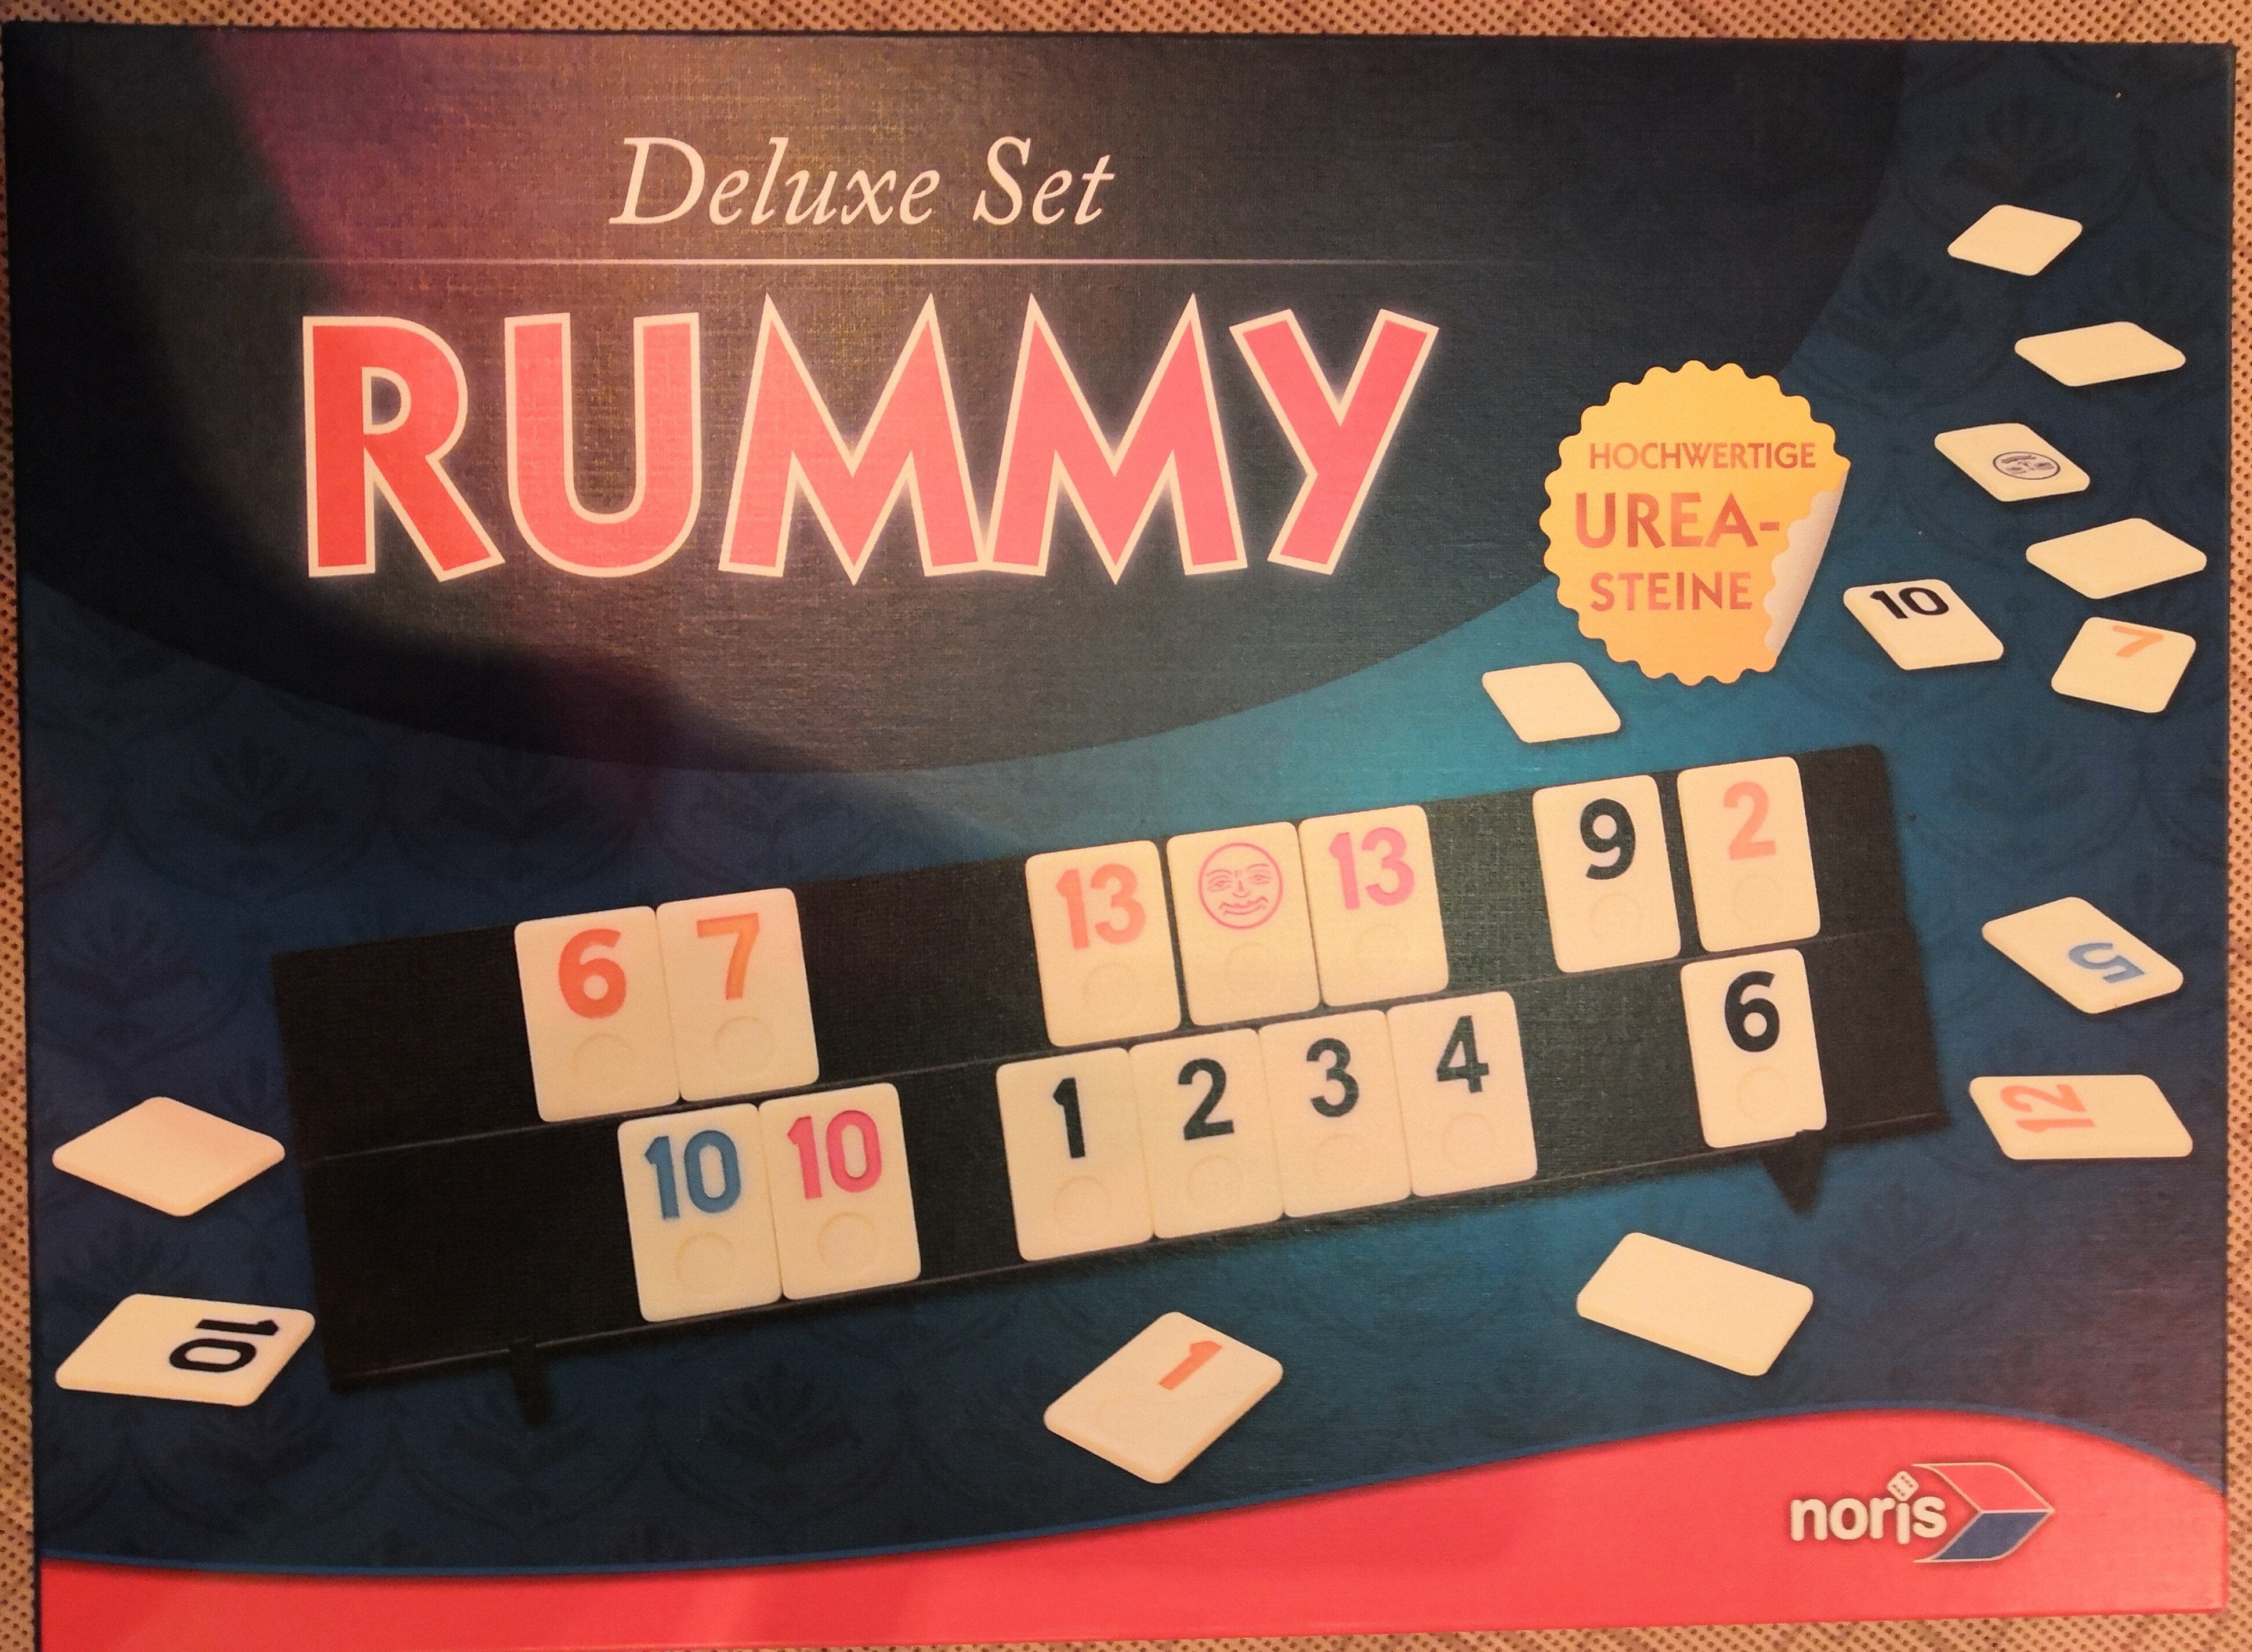 Rummy Deluxe Set - Product - de